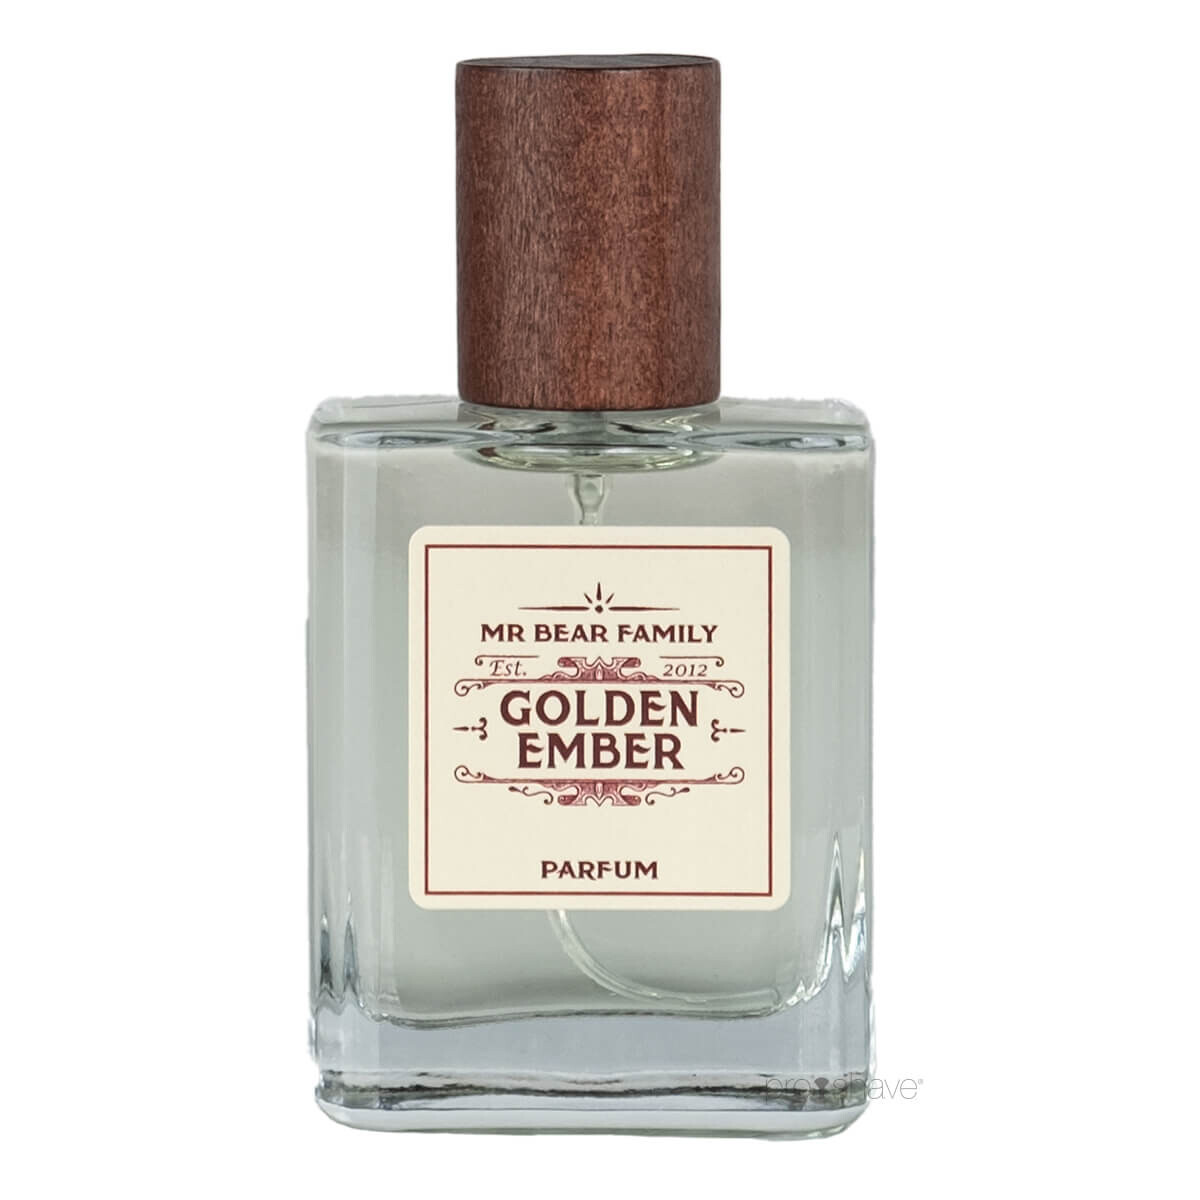 11: Mr. Bear Perfume, Golden Ember, 50 ml.